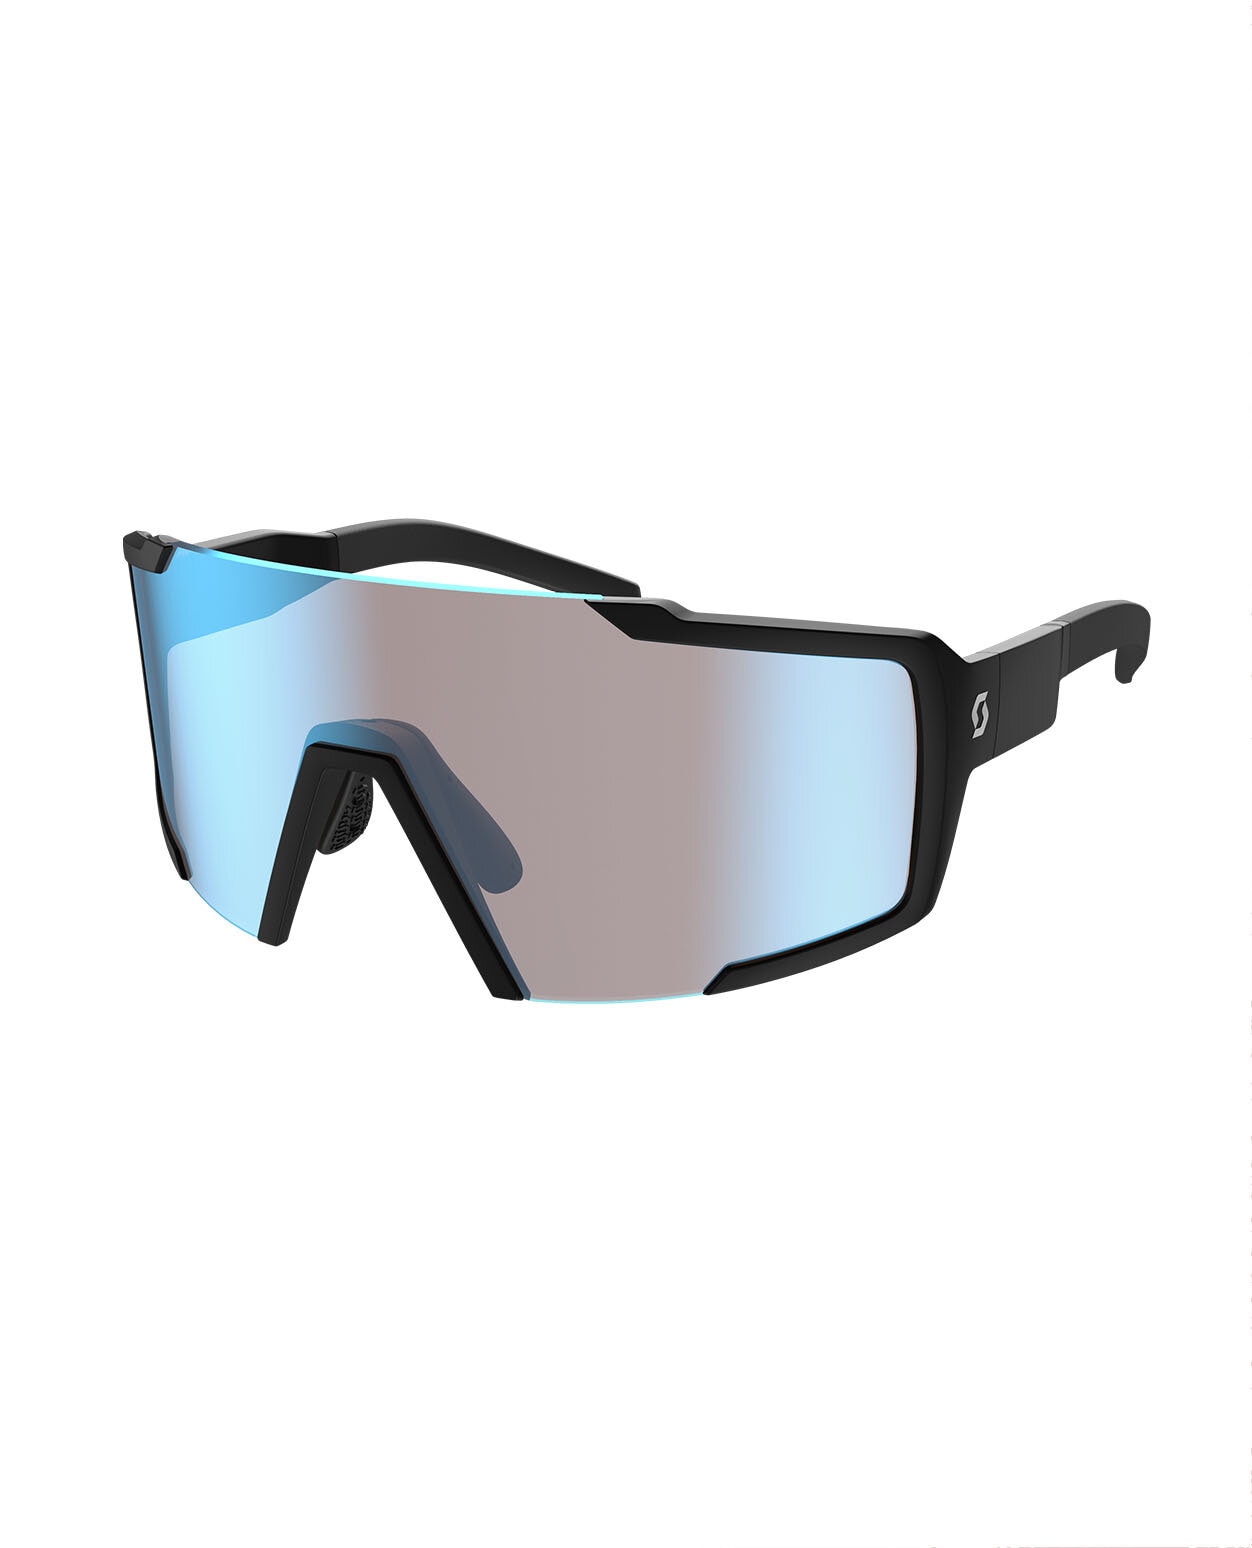 Scott Shield Sunglasses Black Matt/ Blue Chrome Enhancer